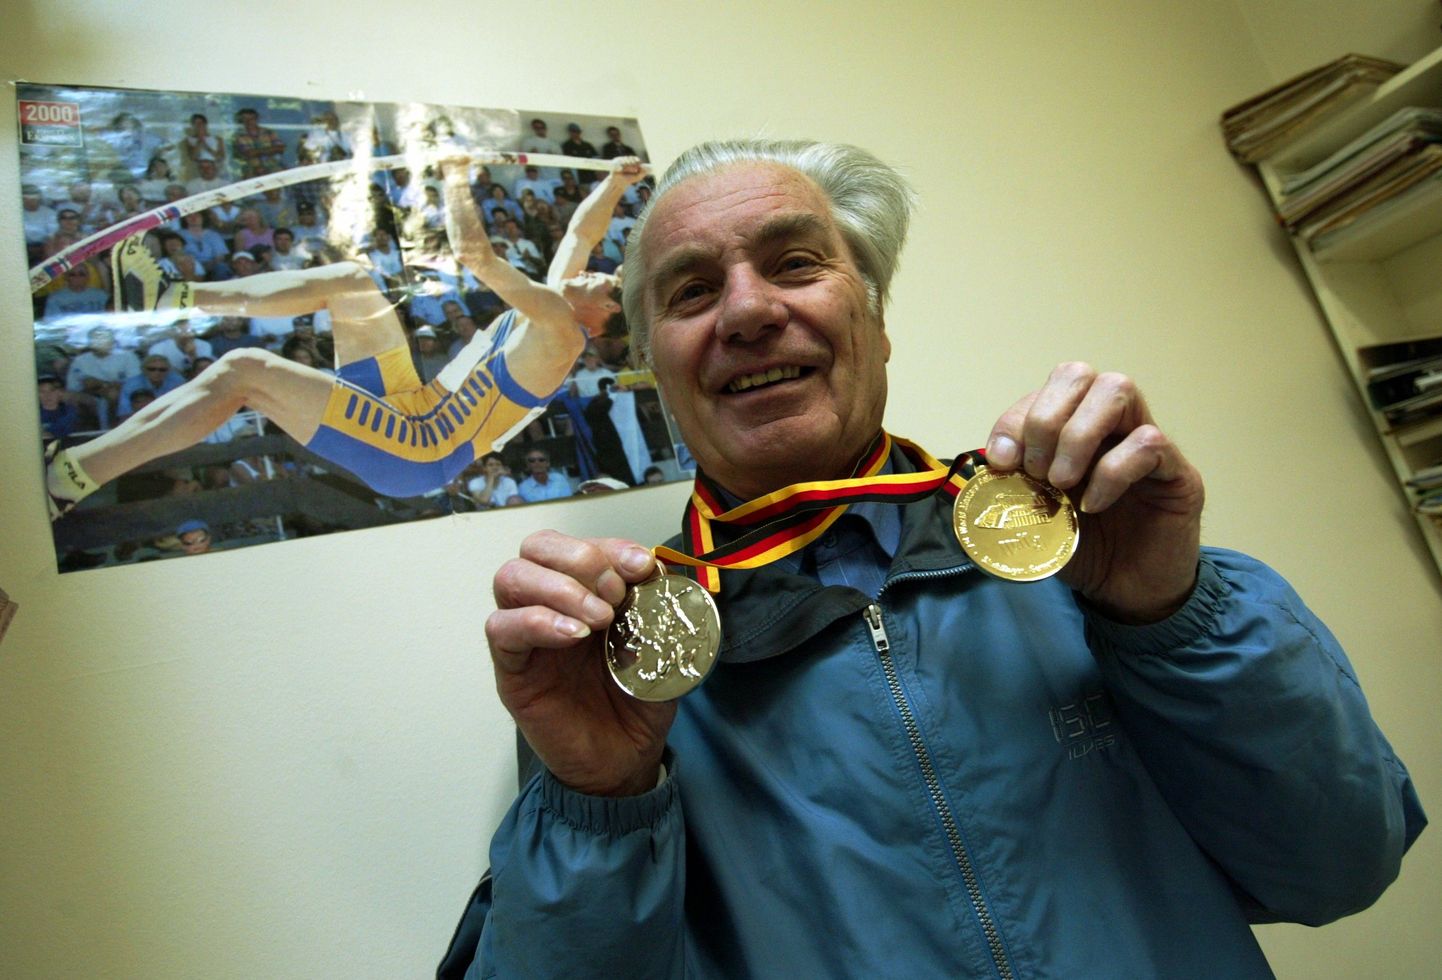 Martin Kutman võitis märtsis 2004 esimestel veteranide kergejõustiku sisemaailmameistrivõistlustel üle 75-aastaste vanuseklassis tulemusega 2.70 meetrit teivashüppes kuldmedali ning 60 meetri tõkkejooksus ajaga 12,17 sekundit hõbemedali.